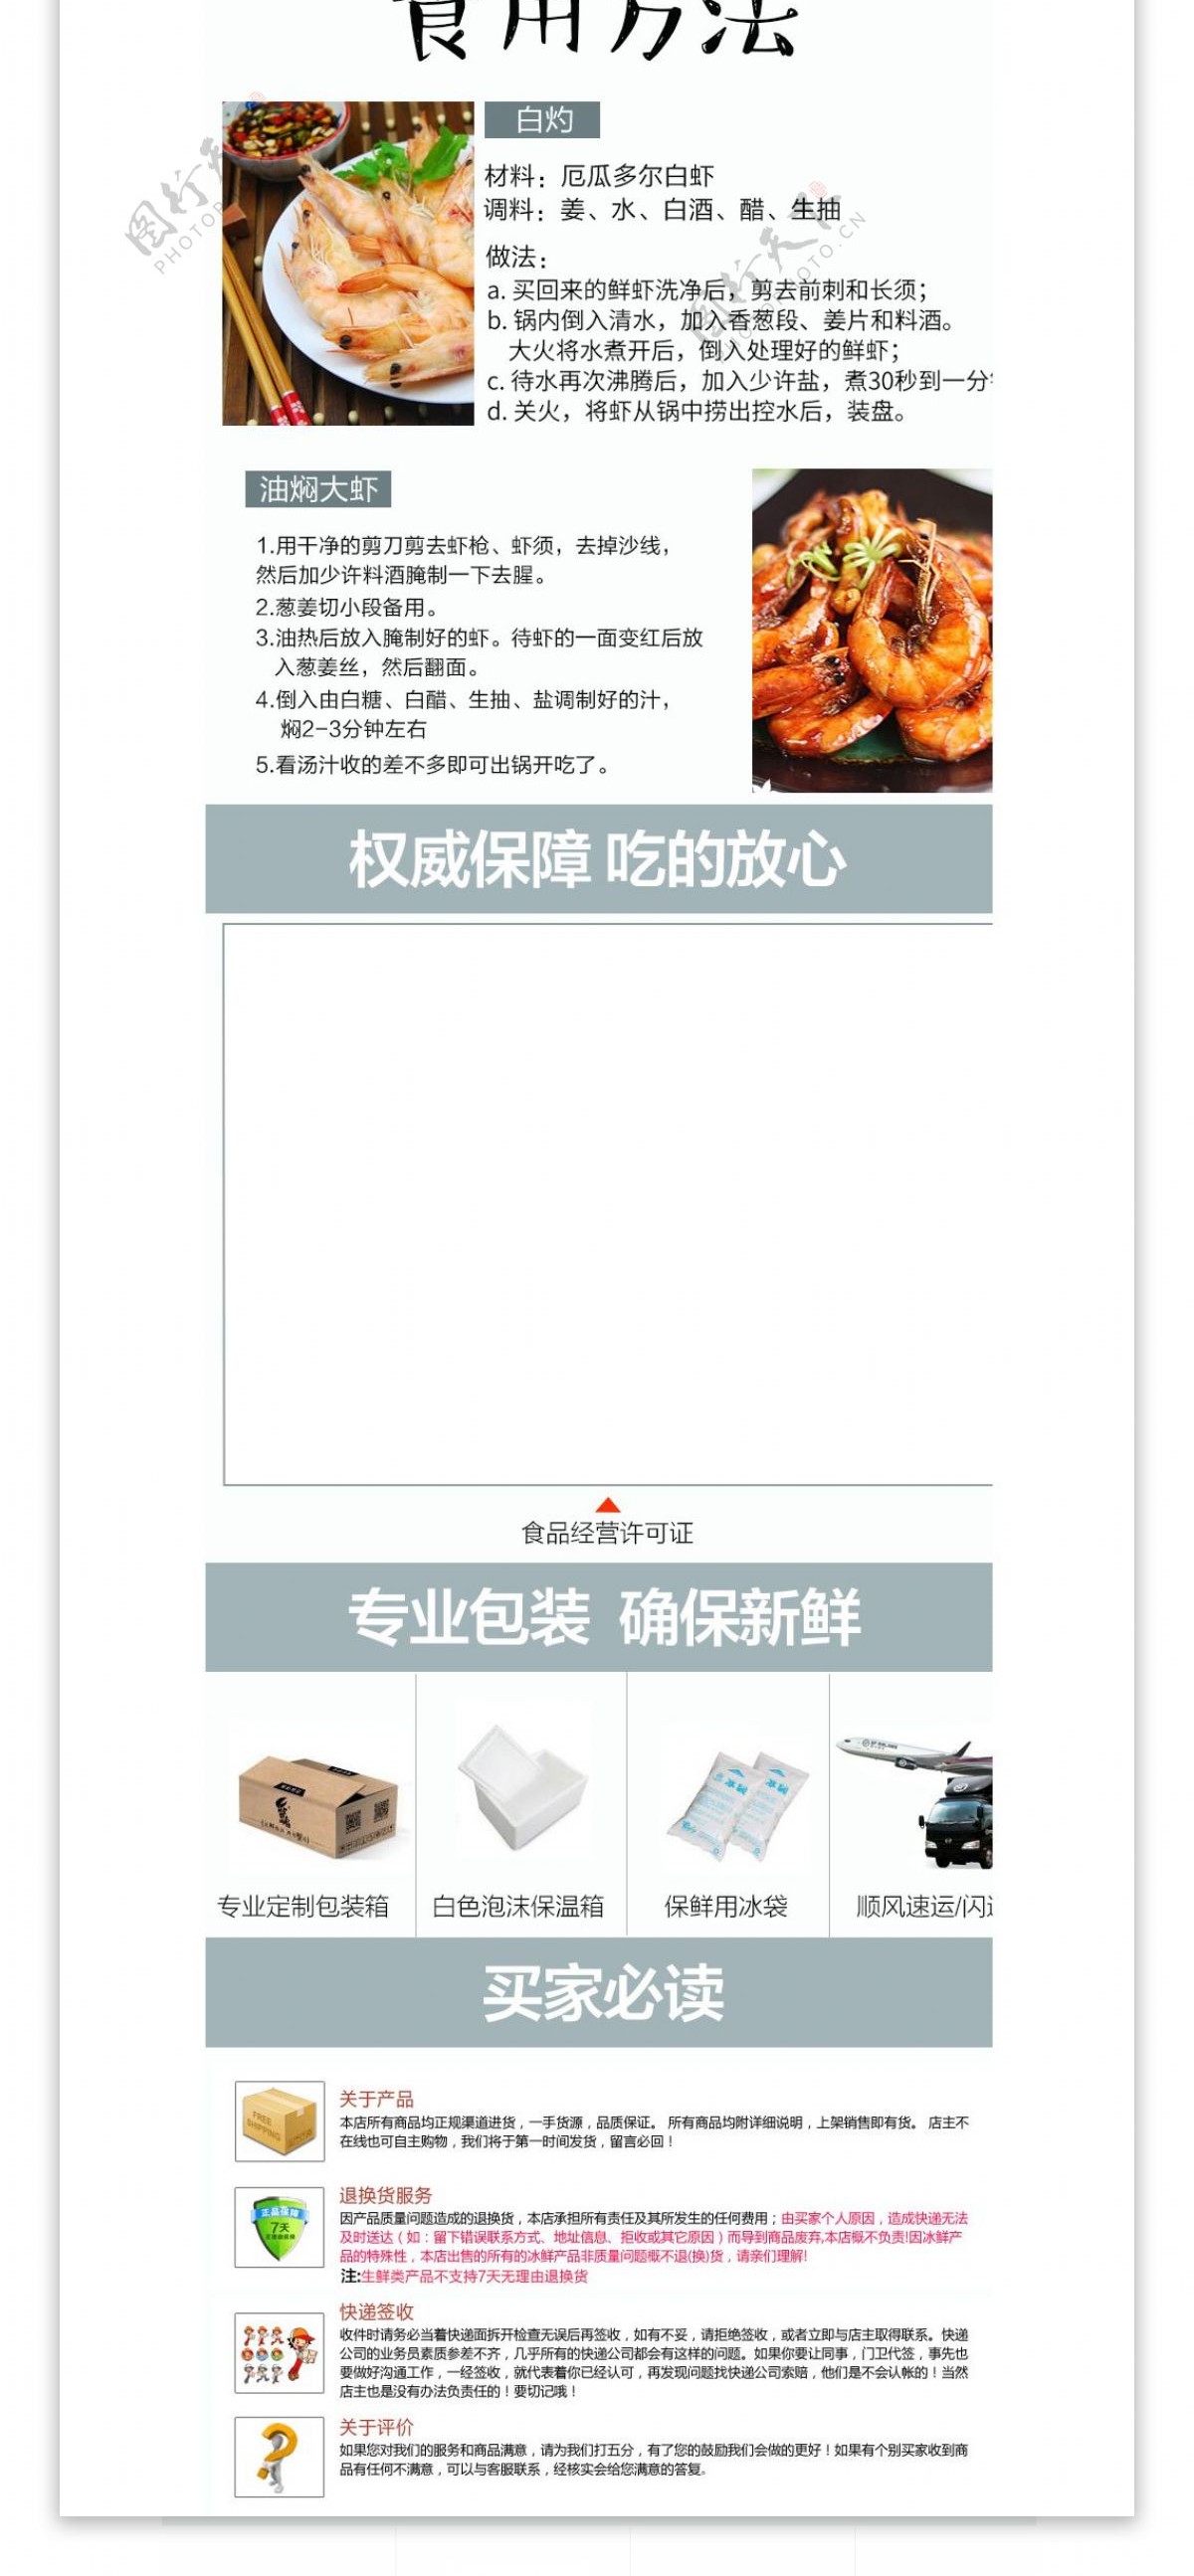 电商淘宝海鲜白虾清新简洁详情页模板